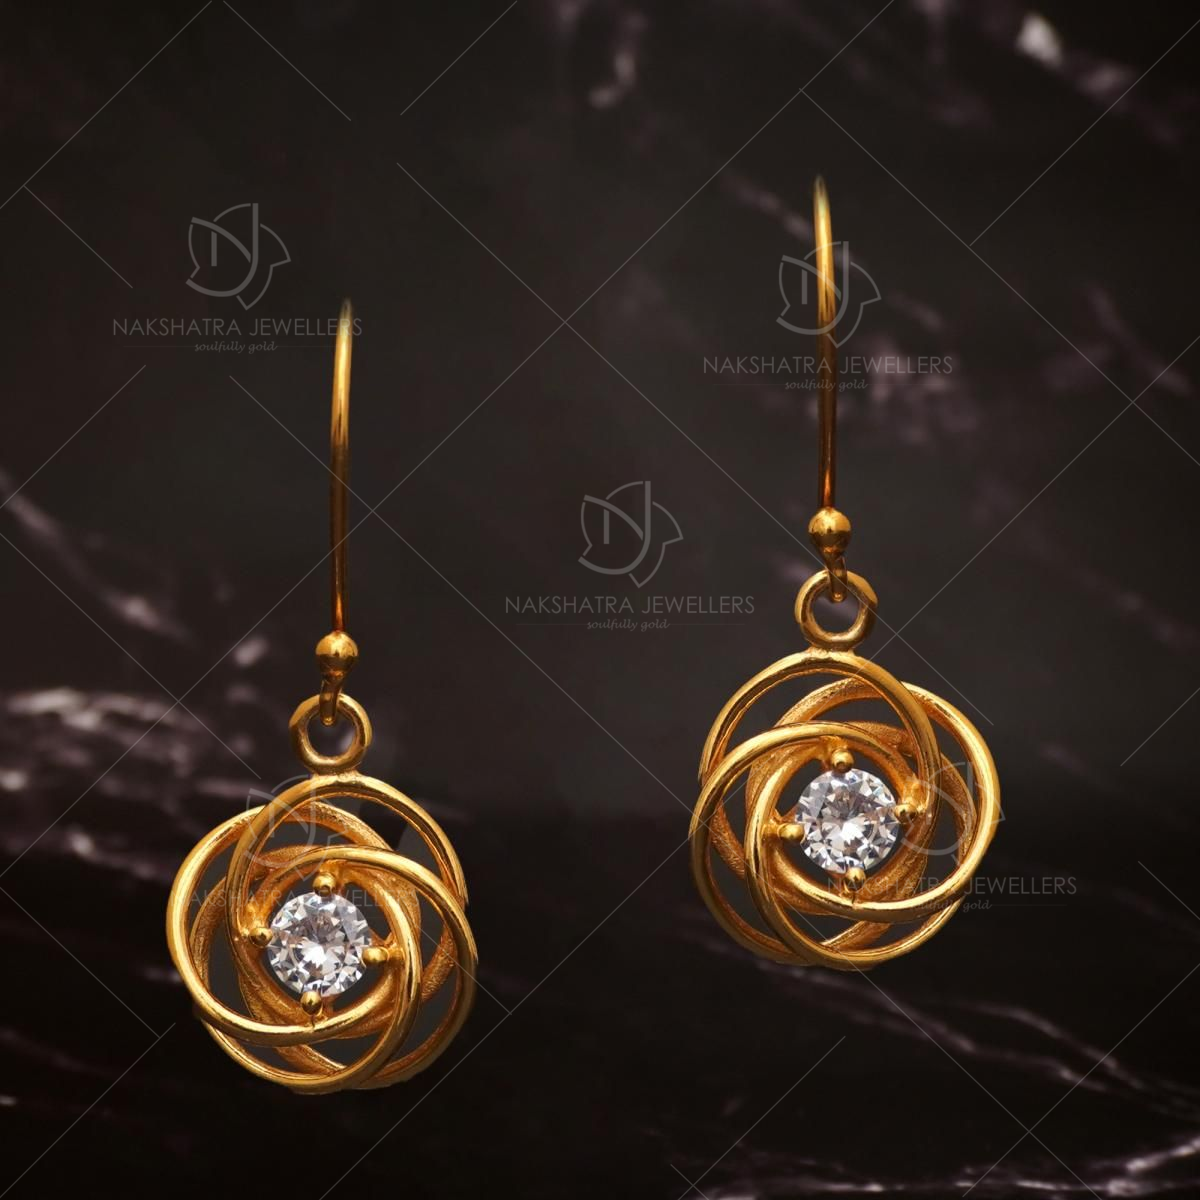 Bali Style Jhumka Earrings Latest Addition to Gold Plated Jewellery J25030  | Jhumka earrings, Gold plated jewelry, Bali fashion